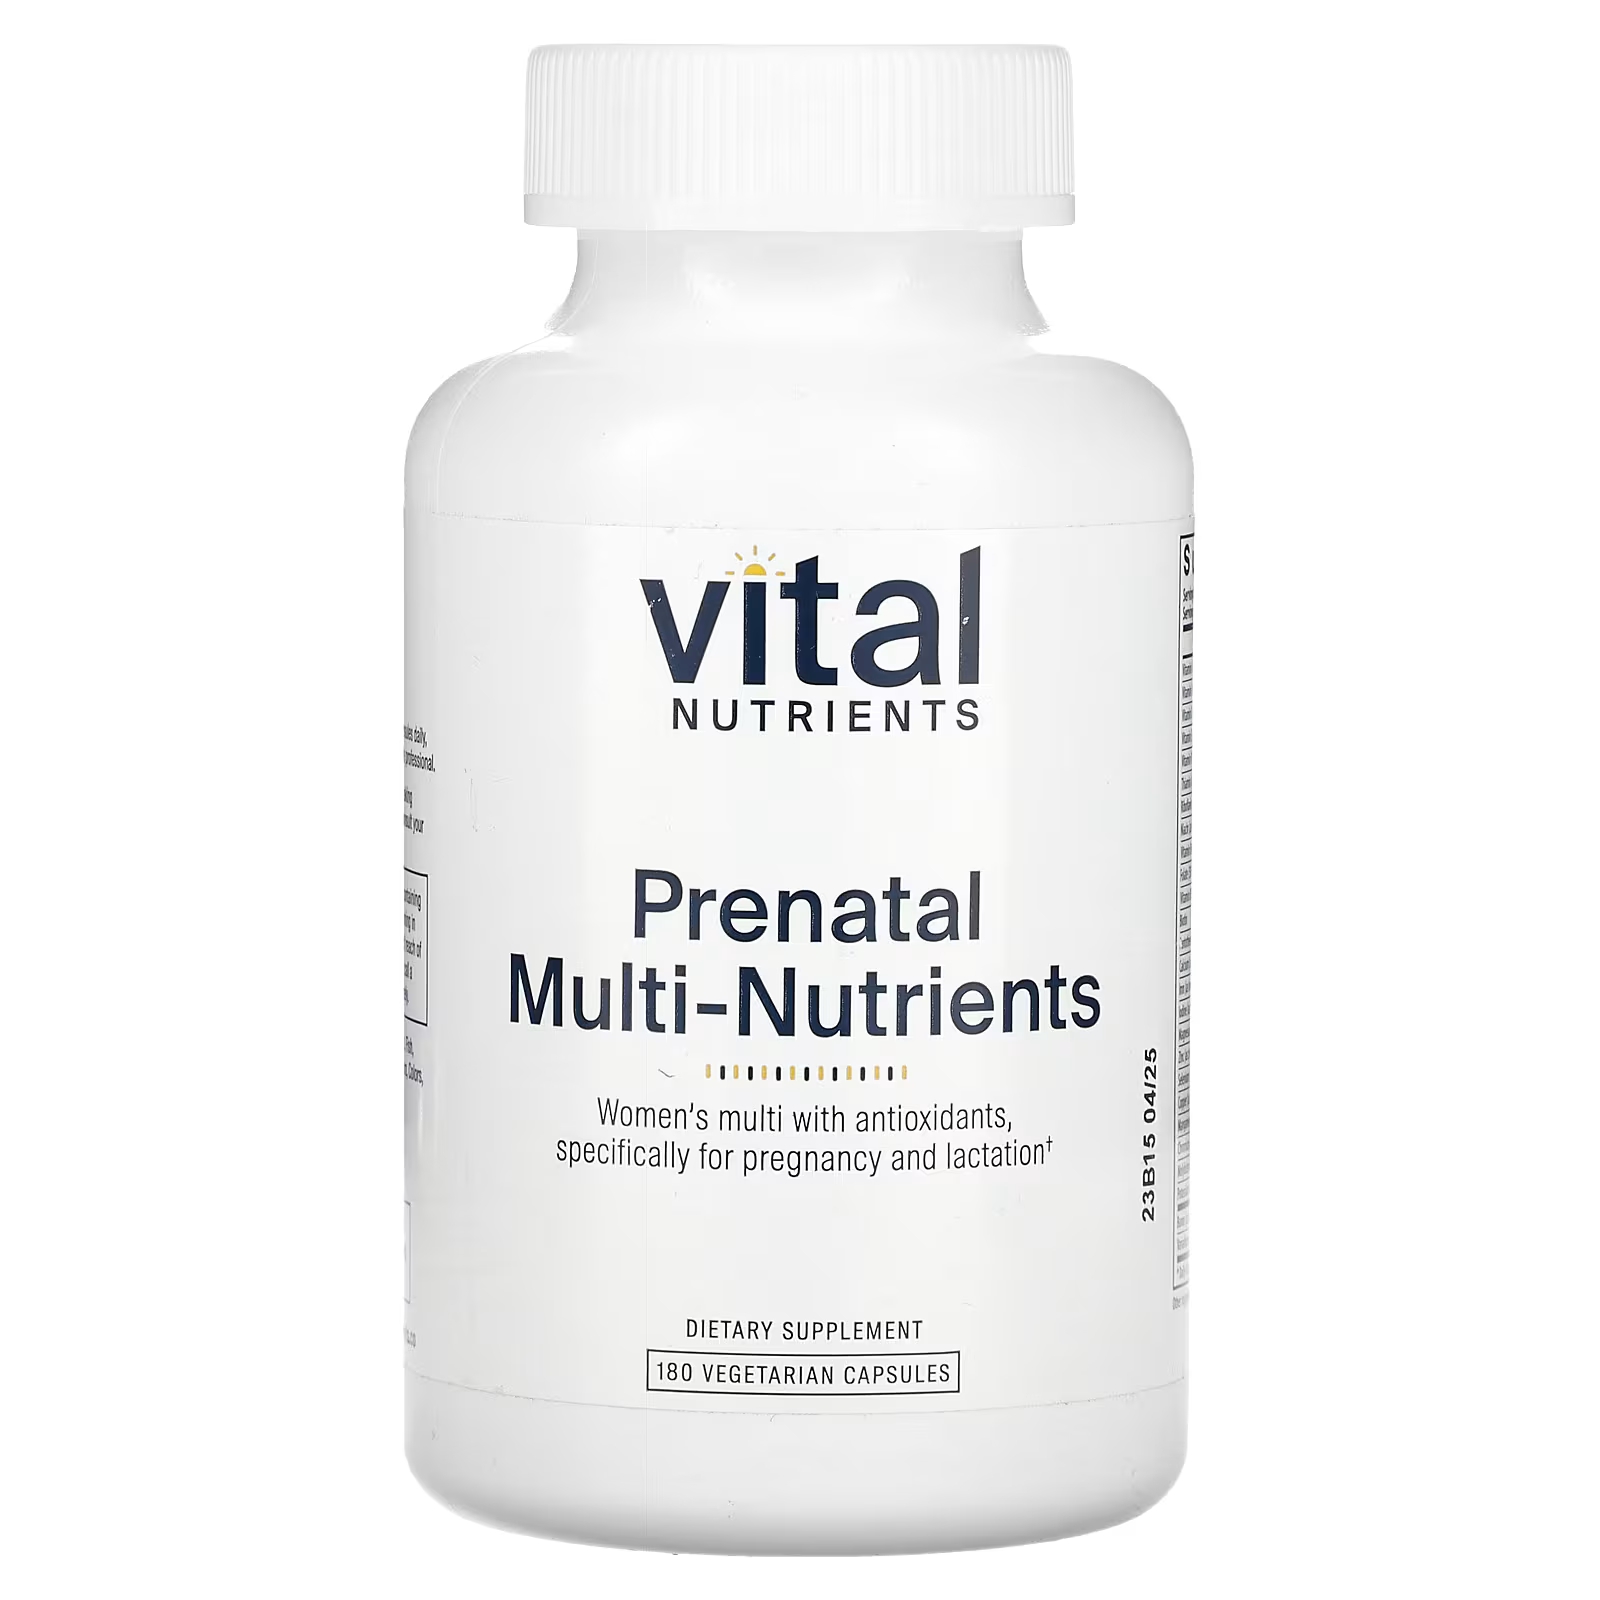 Пищевая добавка Vital Nutrients Prenatal Multi-Nutrients, 180 капсул витамины антиоксиданты минералы awochactive габа